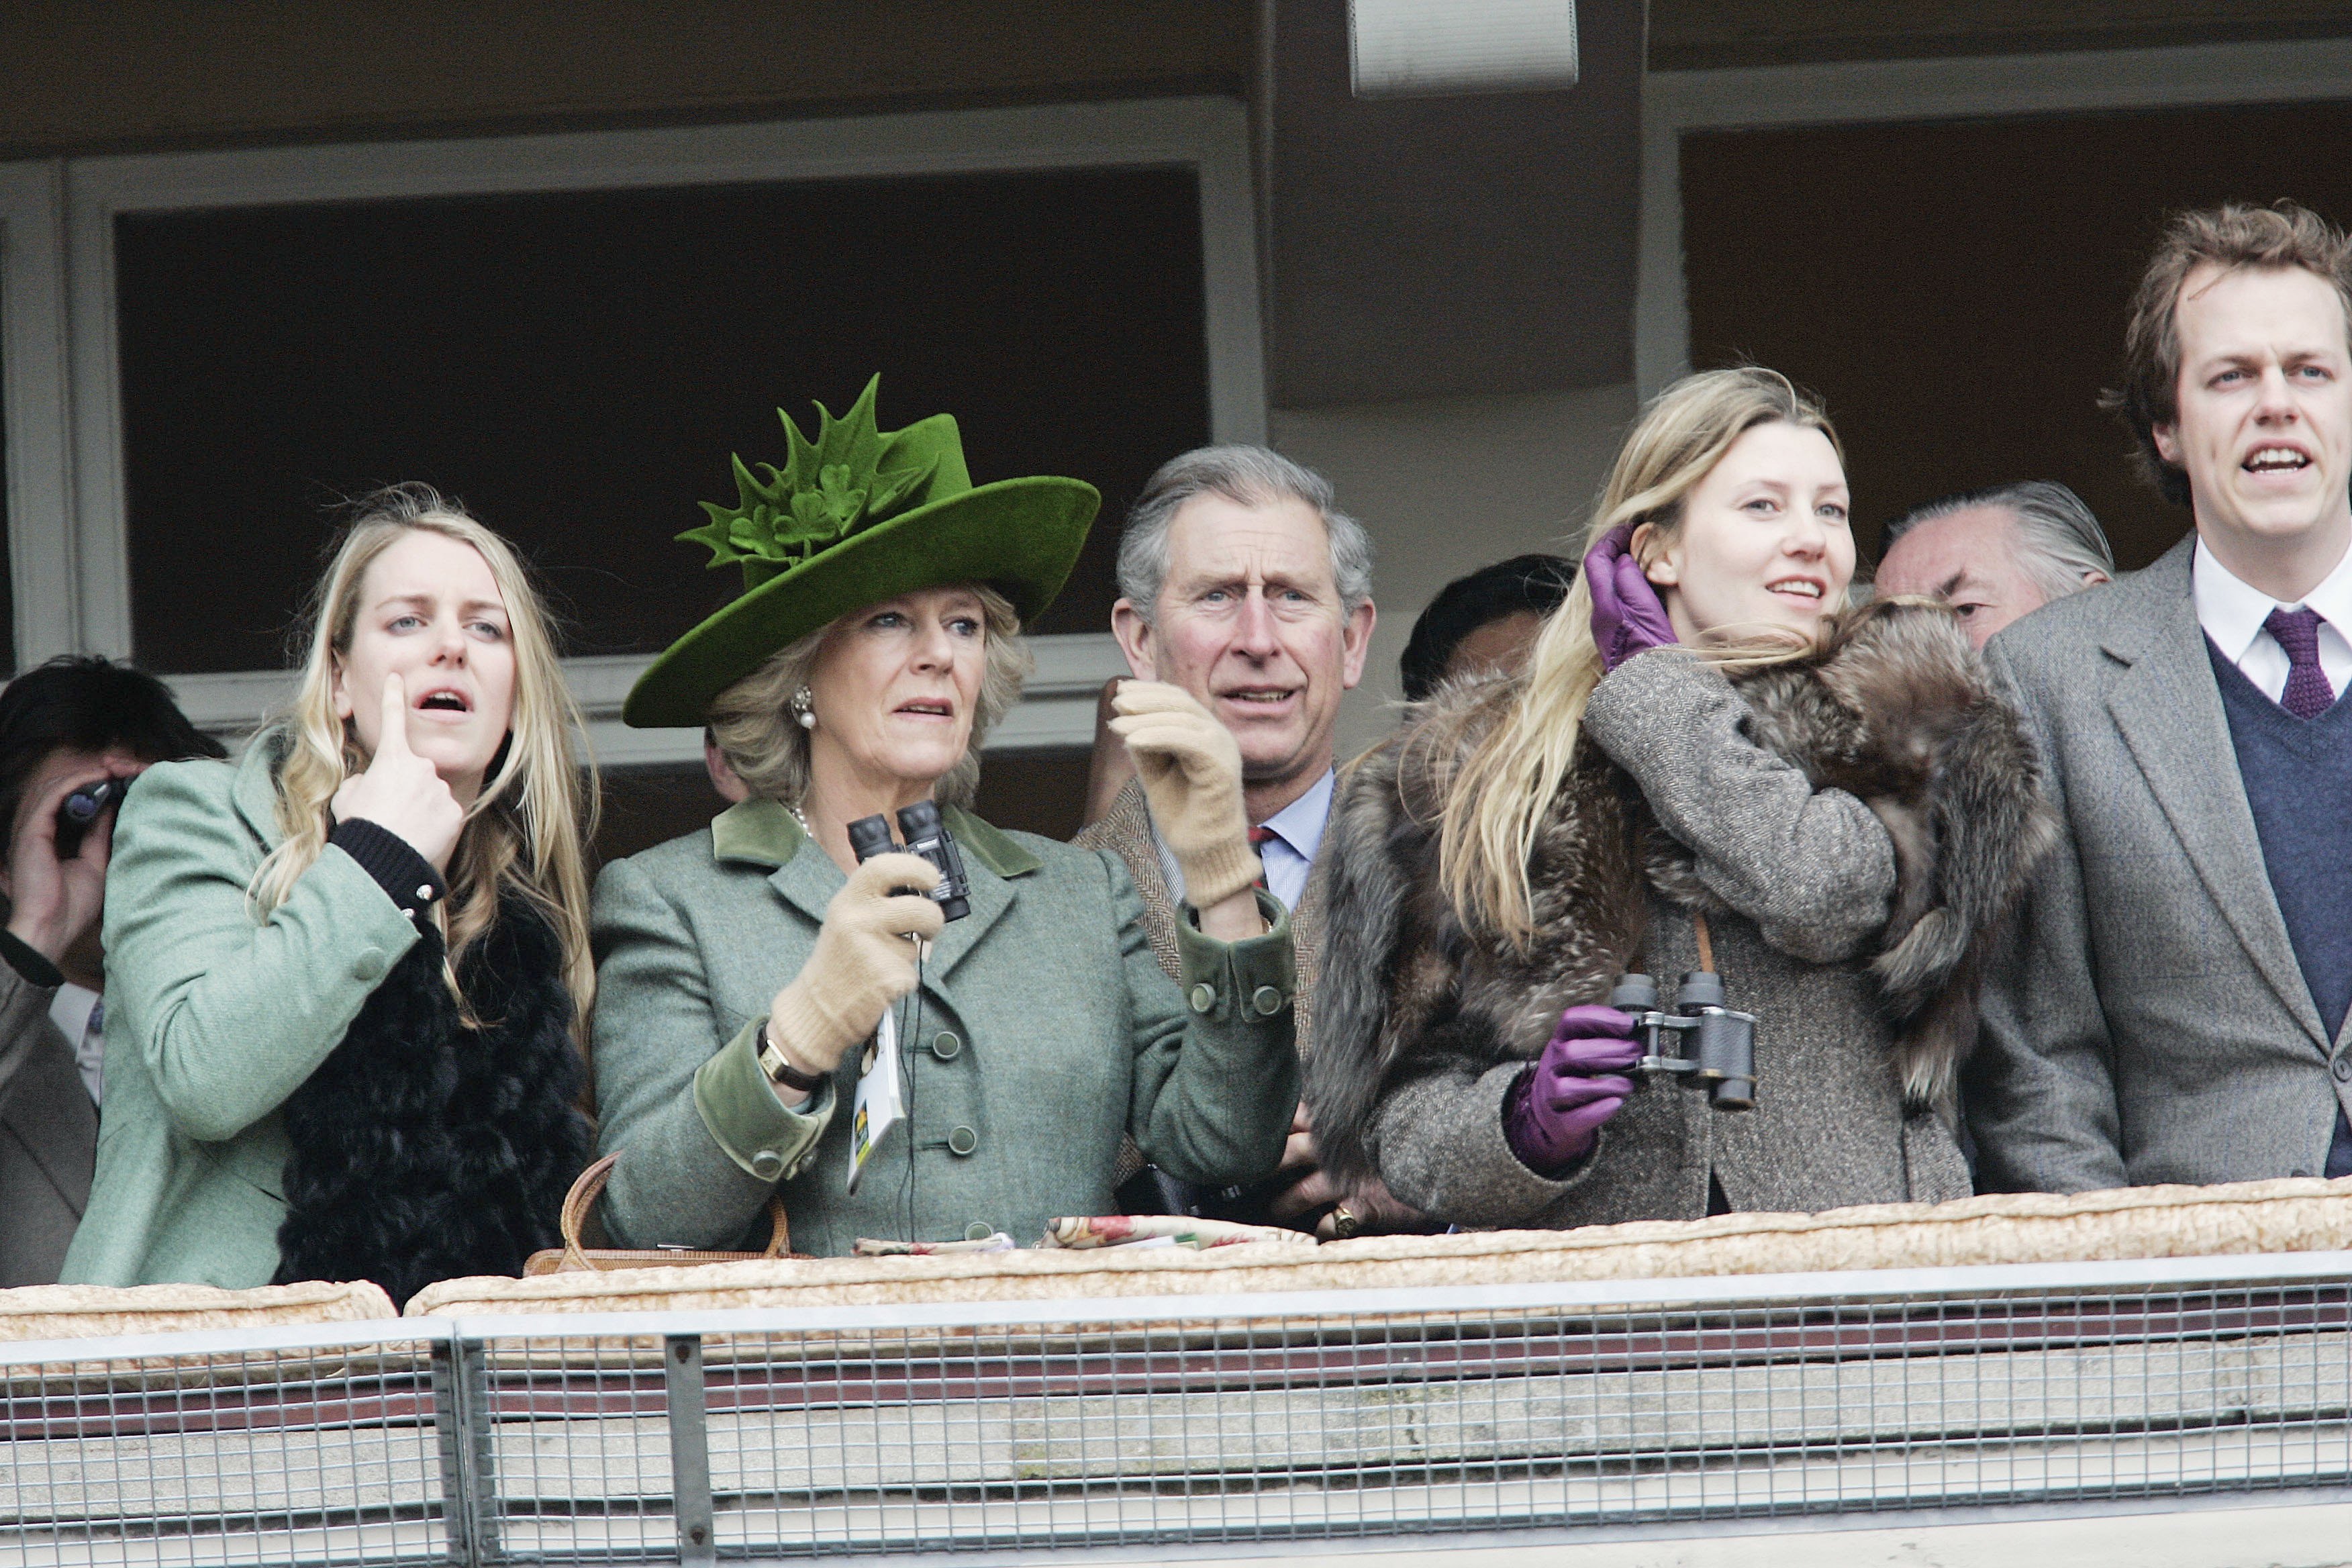 Camilla, duquesa de Cornualles y el príncipe Charles, príncipe de Gales, con Tom Parker-Bowles y su esposa, Sara Parker-Bowles, y Laura Parker-Bowles, el 17 de marzo de 2006 en Cheltenham, Inglaterra. | Foto: Getty Images